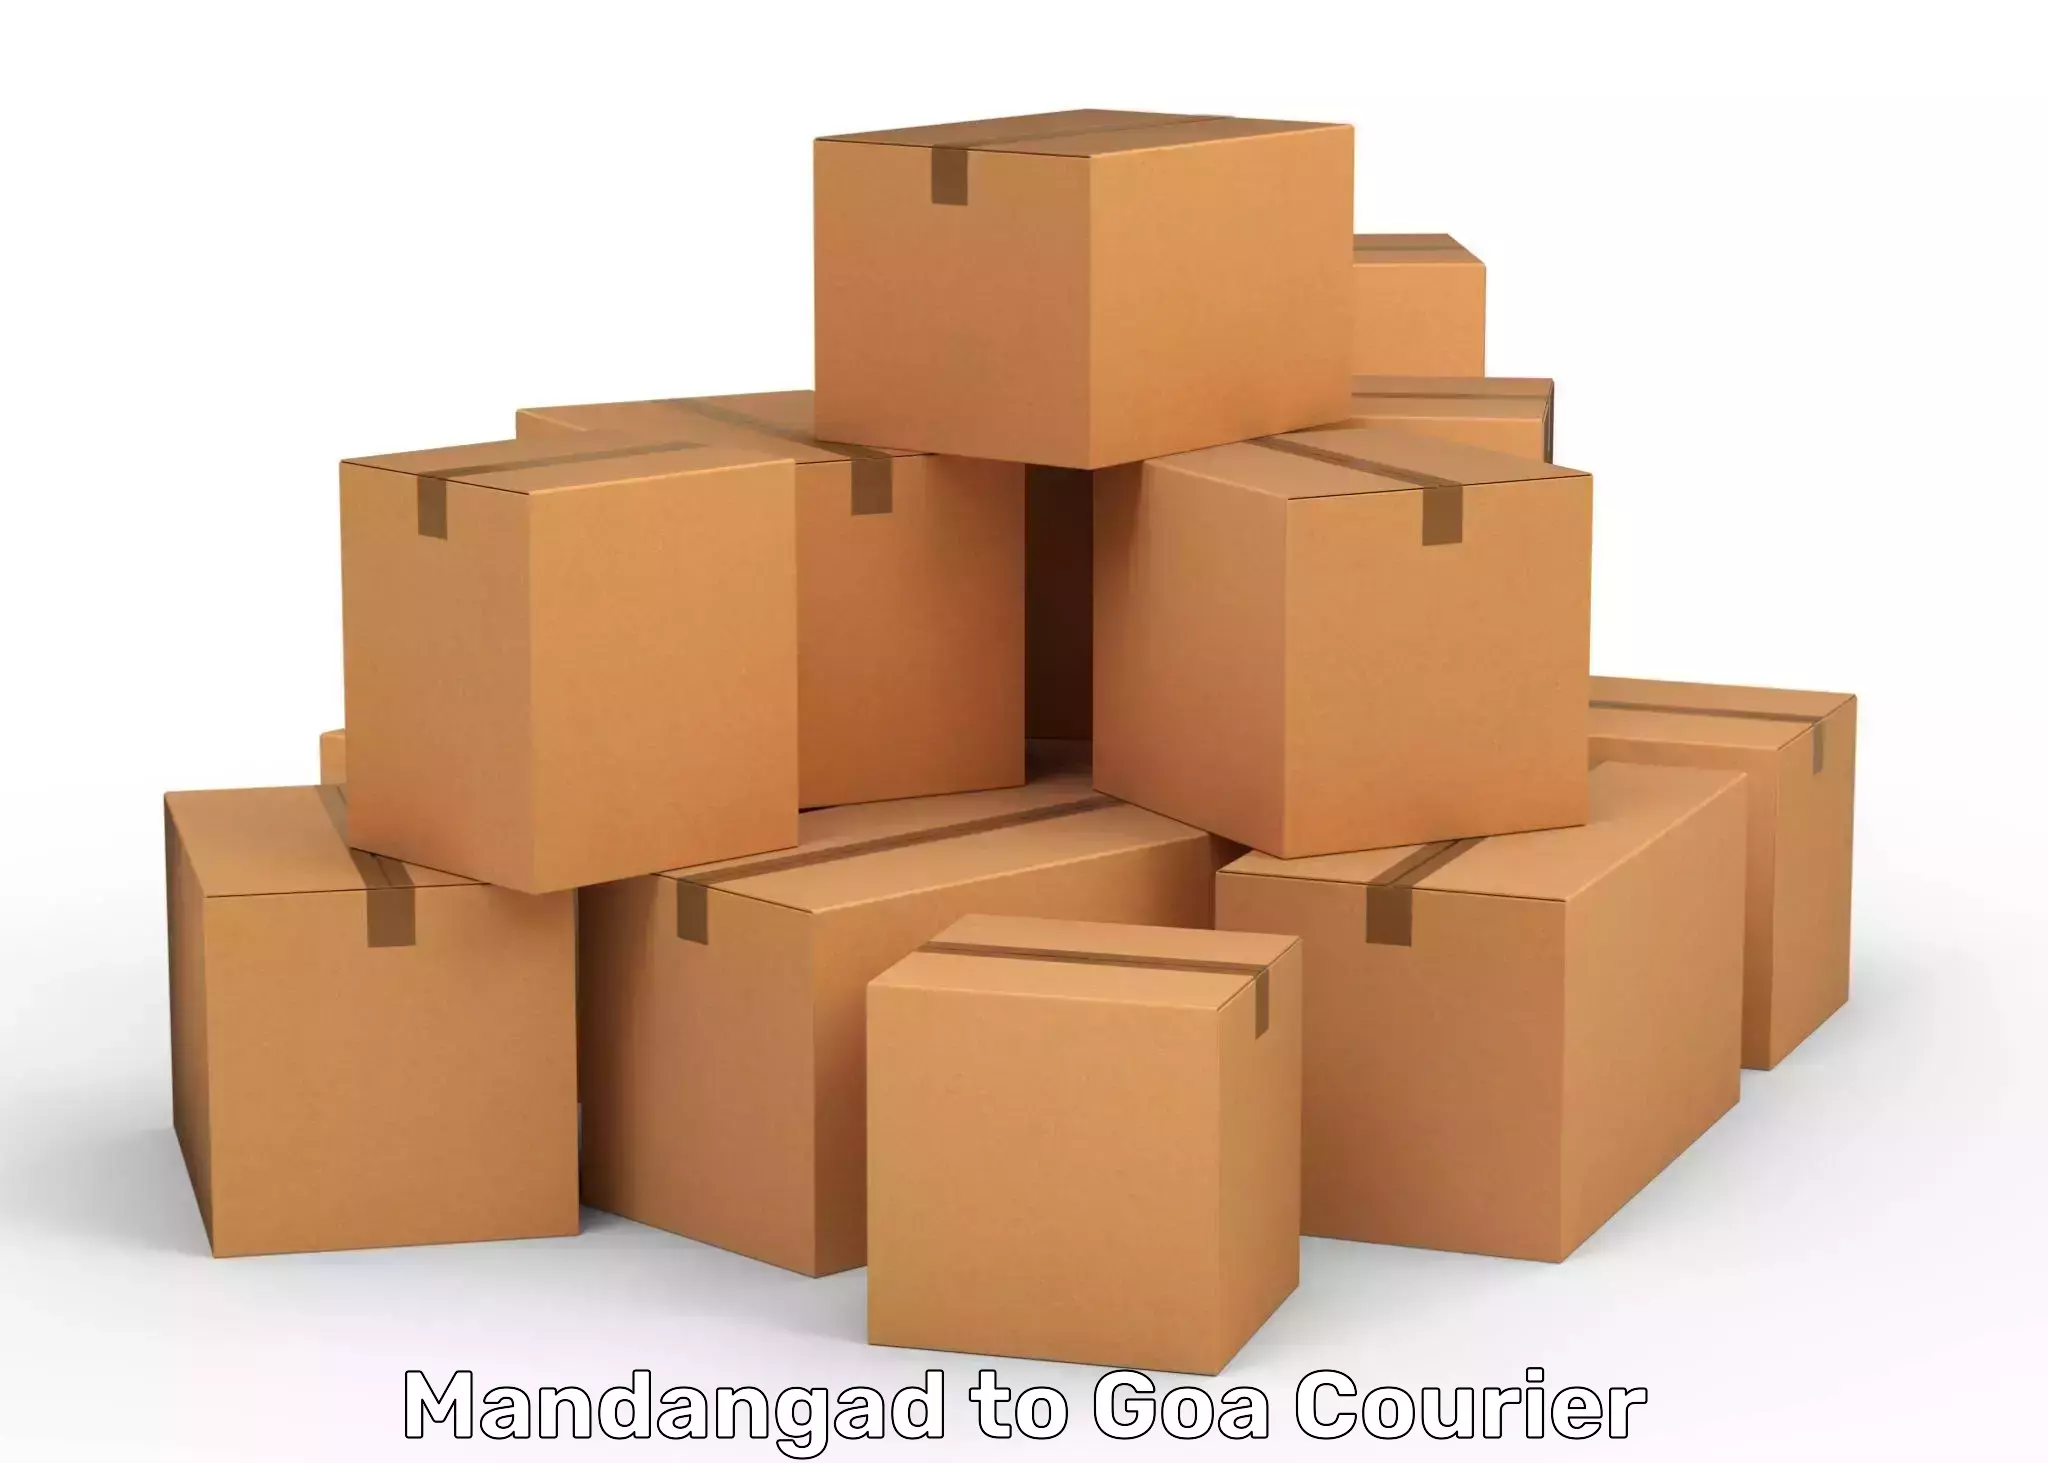 Efficient parcel service Mandangad to Goa